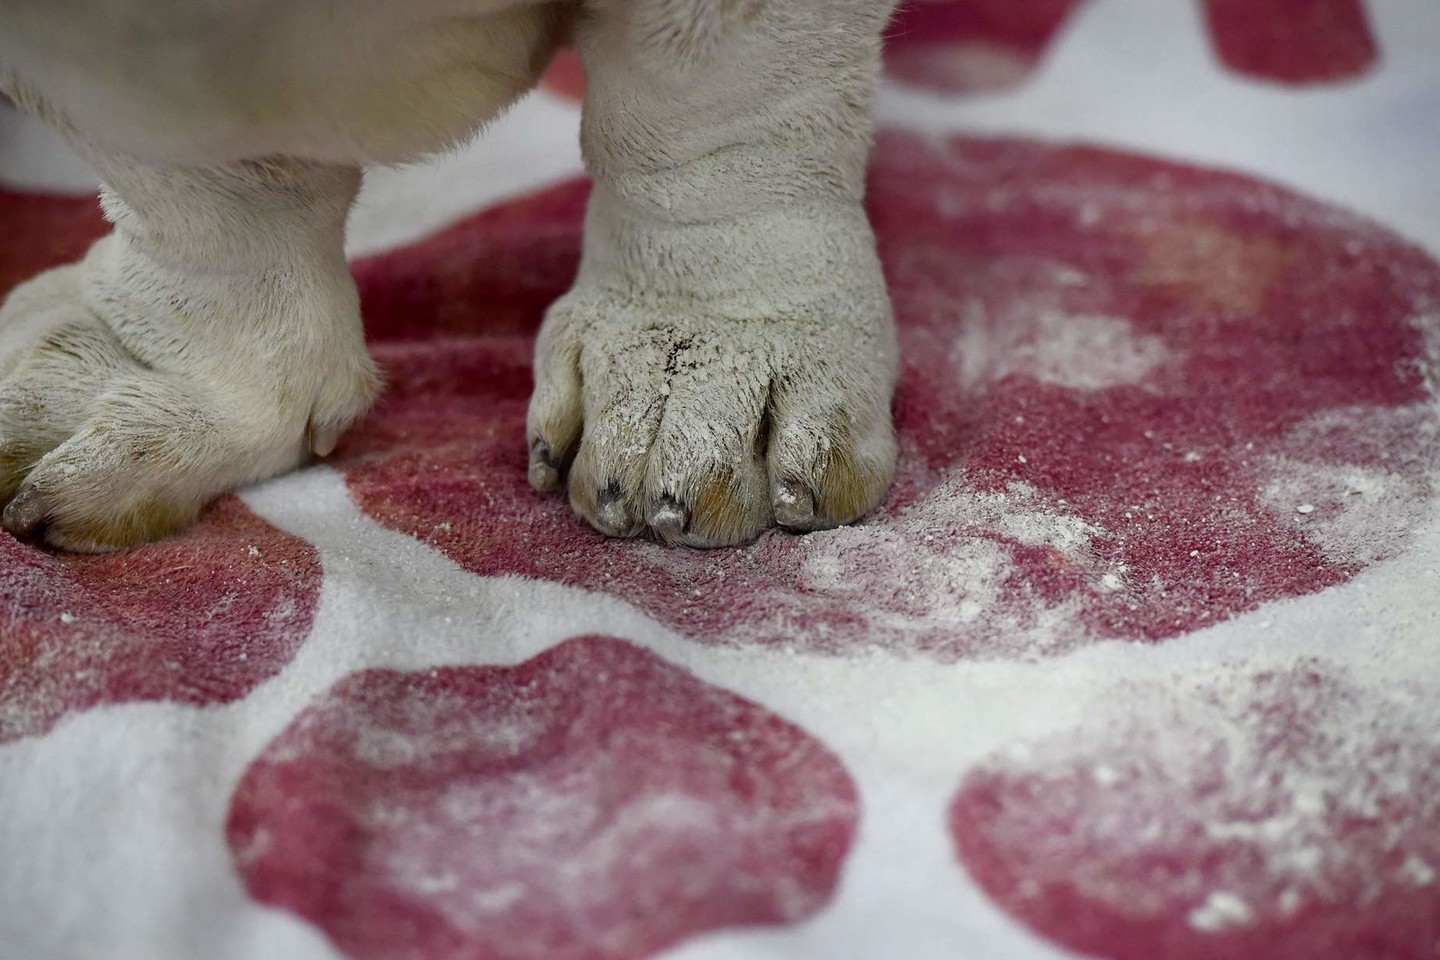 Vestminsterio šunų parodoje Niujorke varžėsi 3 tūkst. keturkojų.<br>AFP/Scanpix nuotr.